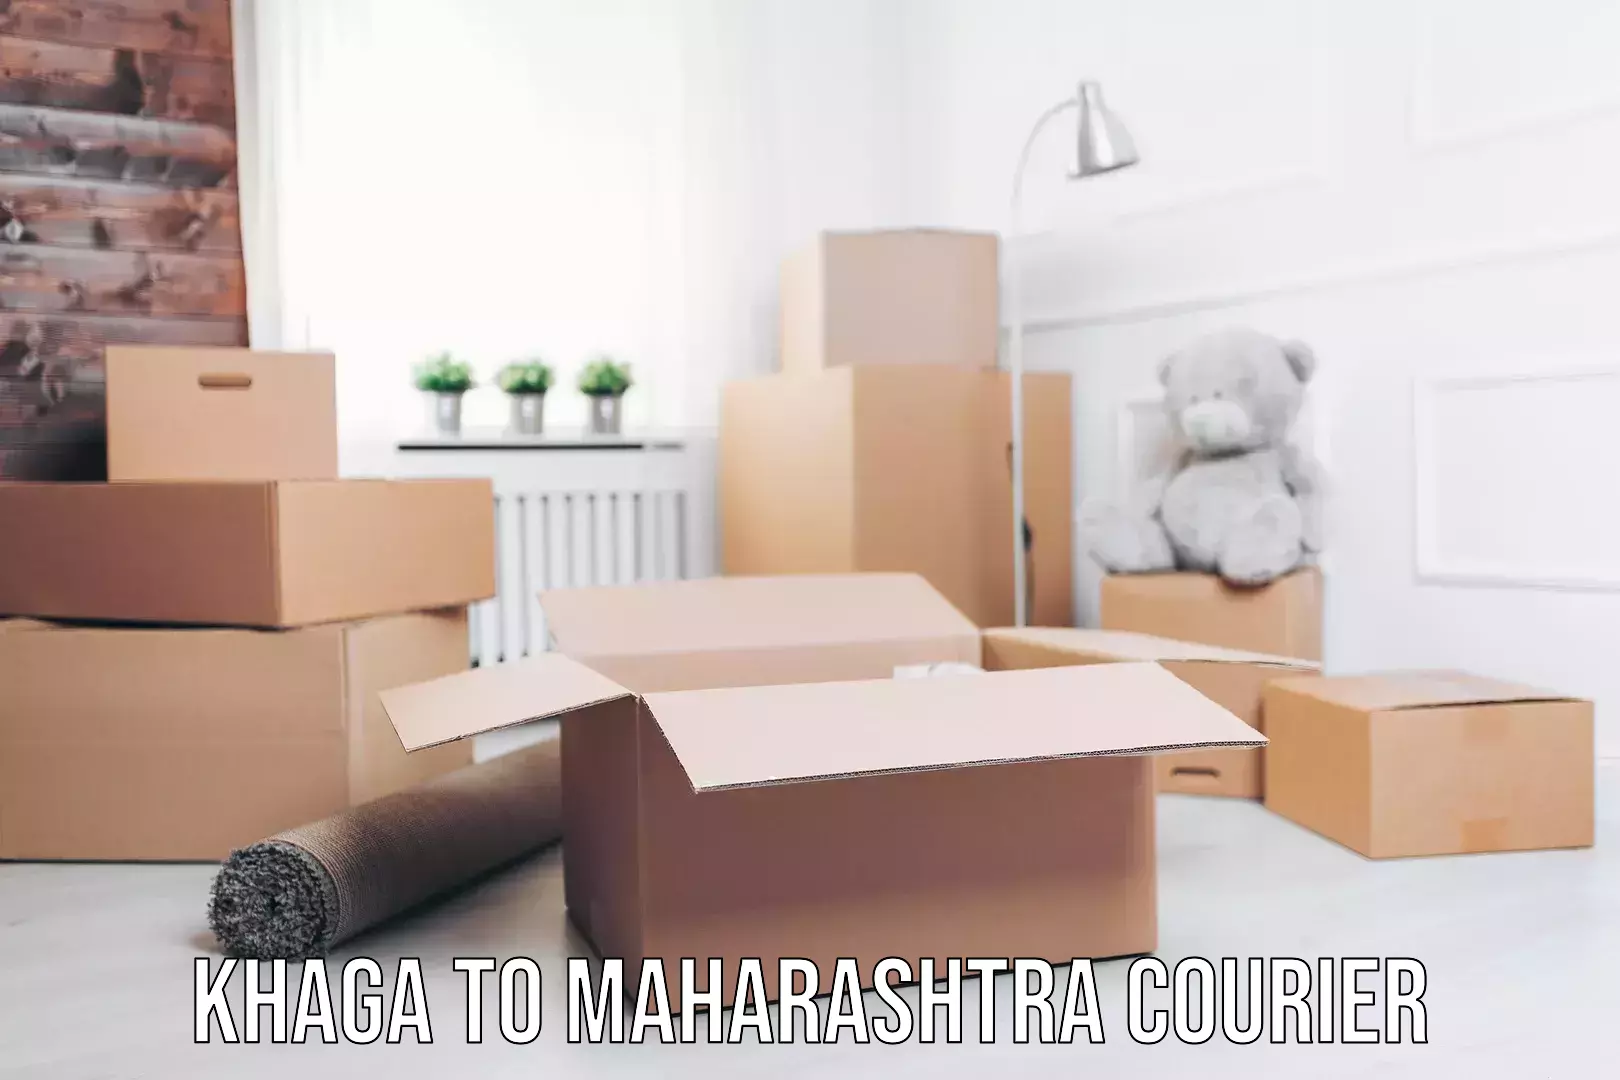 Full home moving services Khaga to Maharashtra